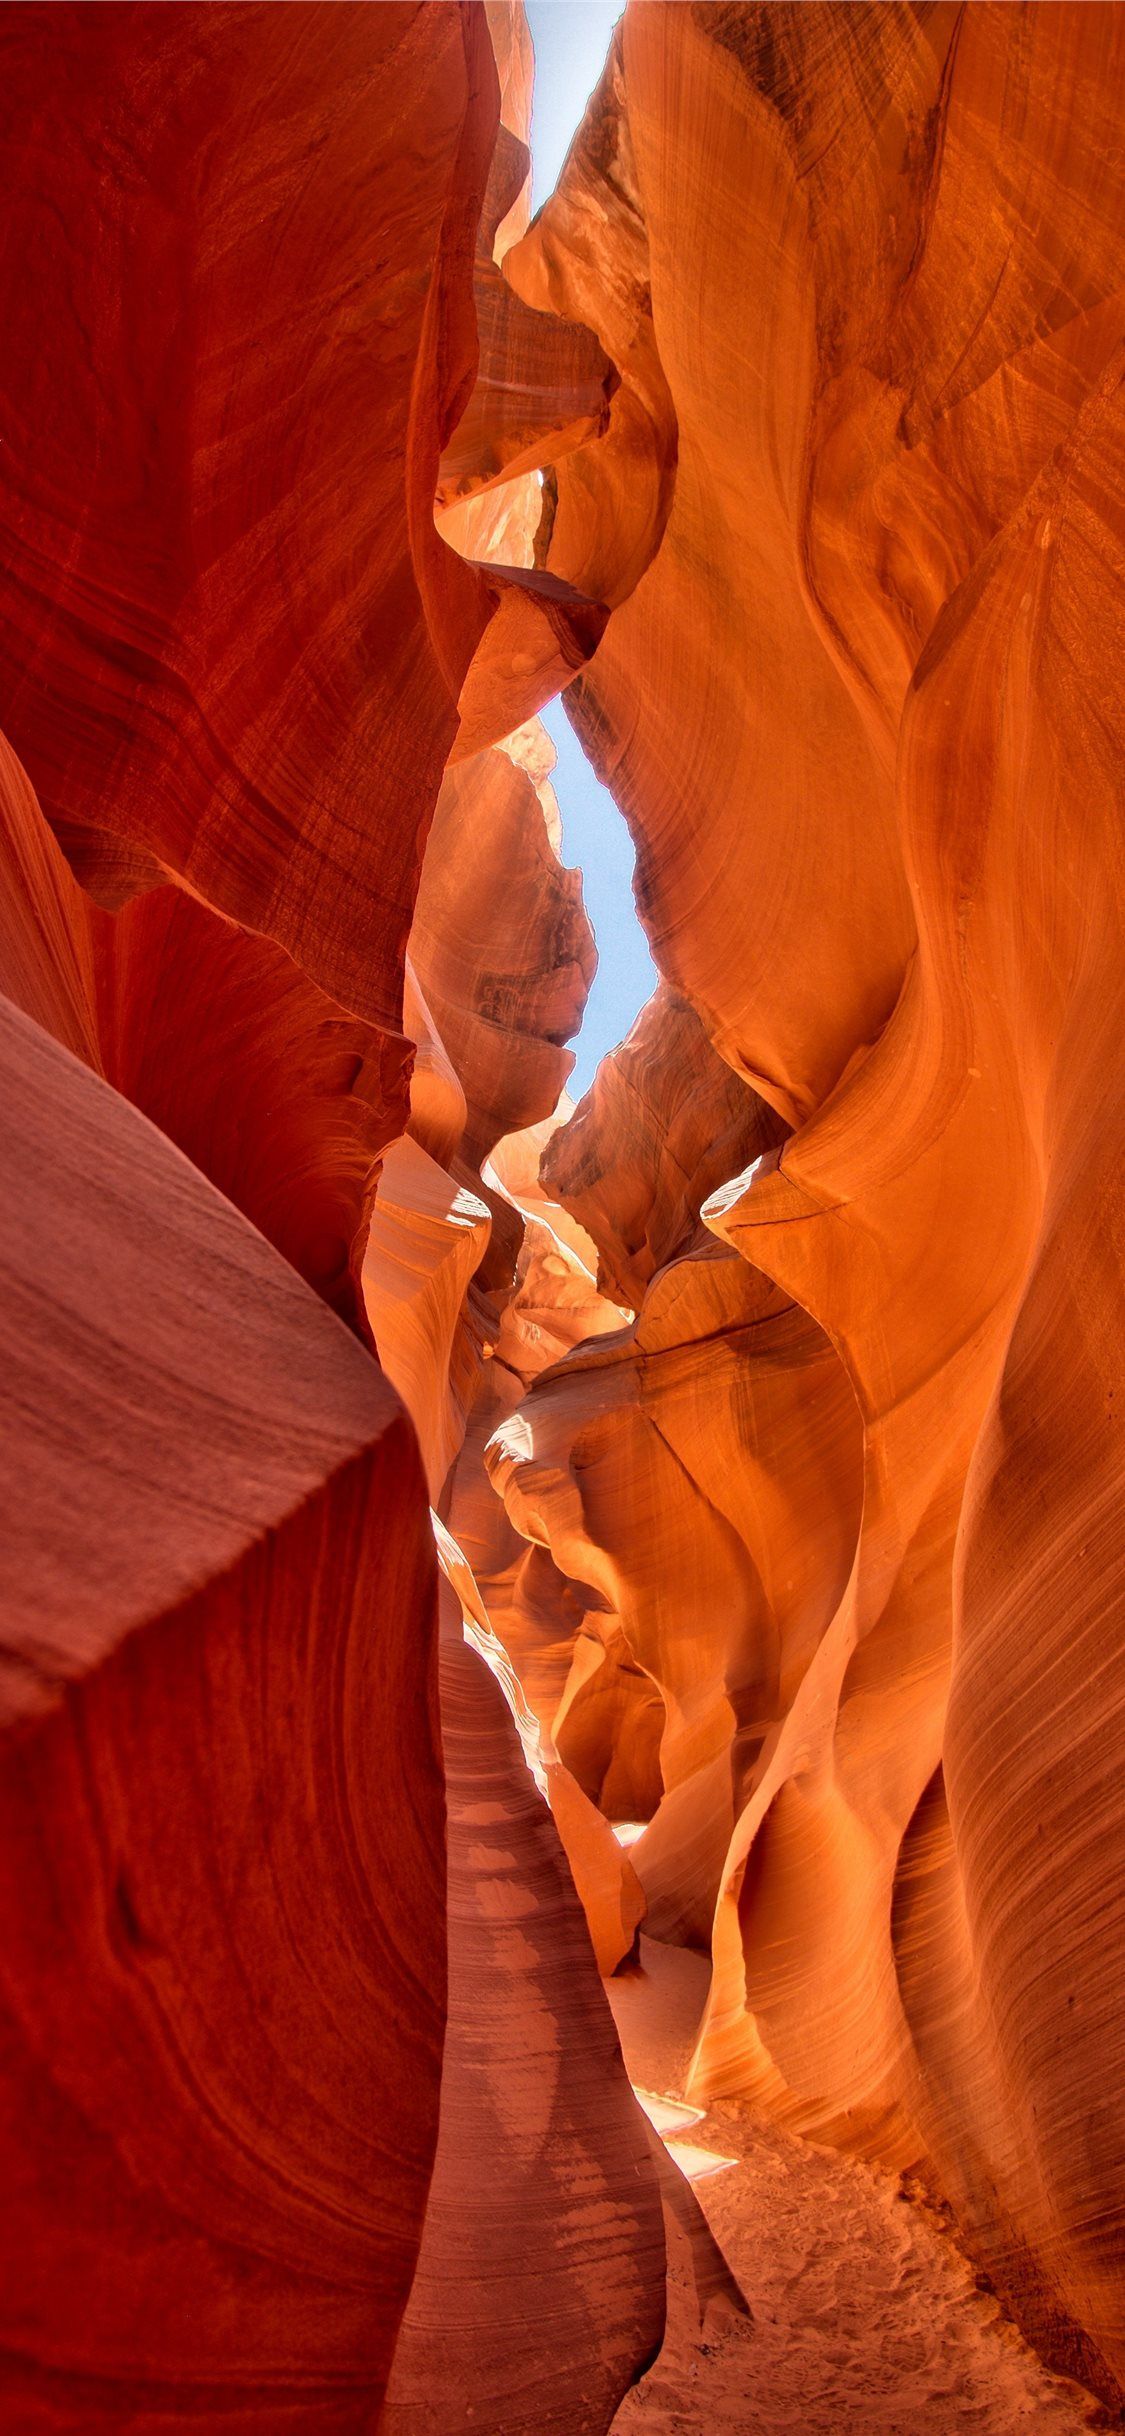 Arizona Grand Canyon during daytime iPhone 11 Wallpaper Free Download